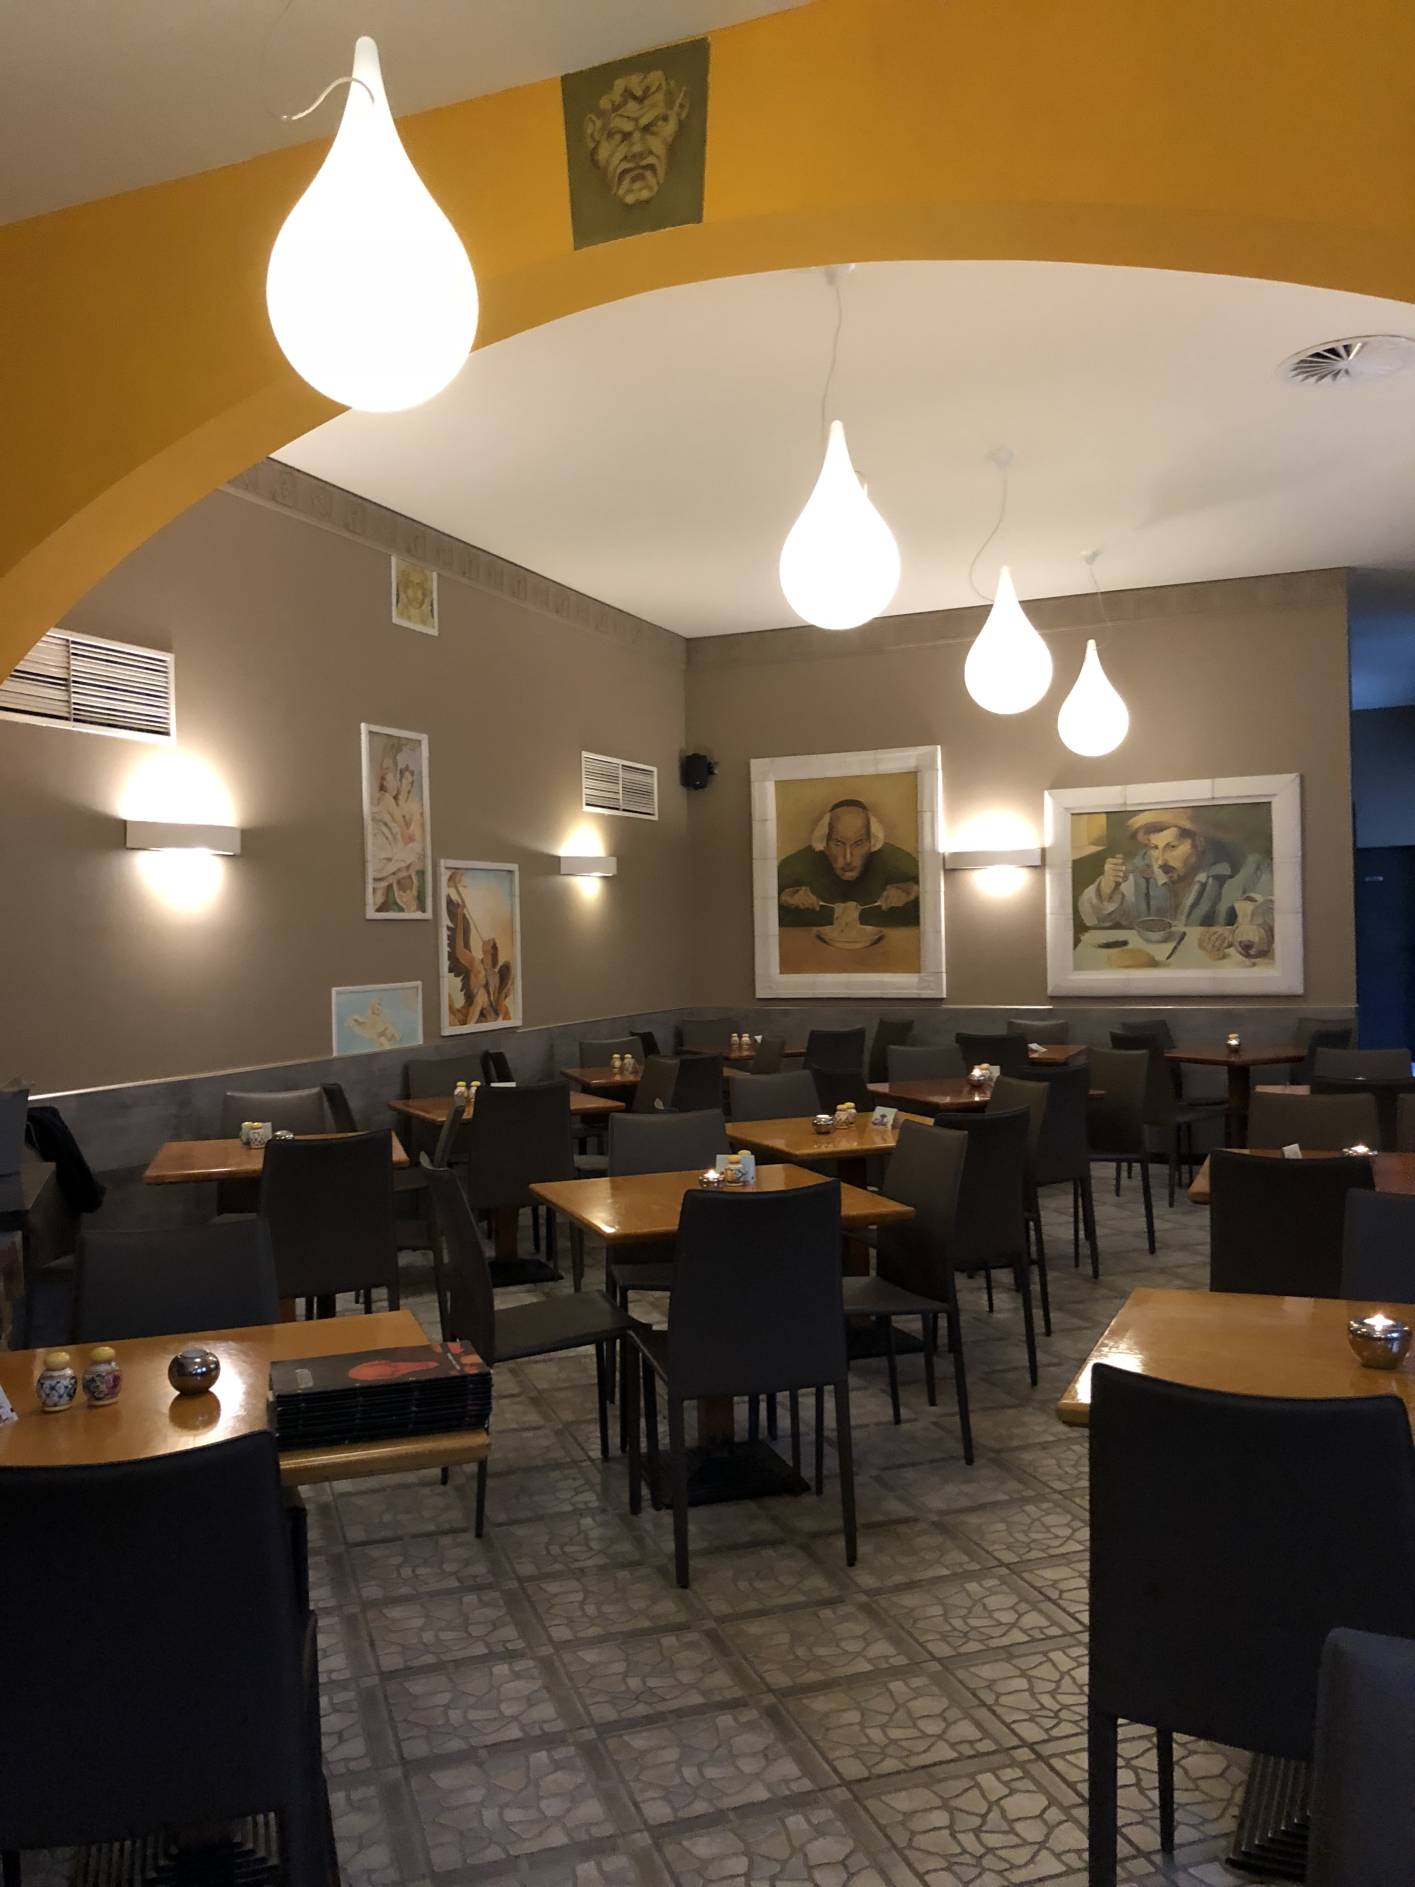 Wir sind ein modernes italienisches Restaurant, Pizzeria und Trattoria in Prenzlauer Berg. Kommen Sie vorbei!